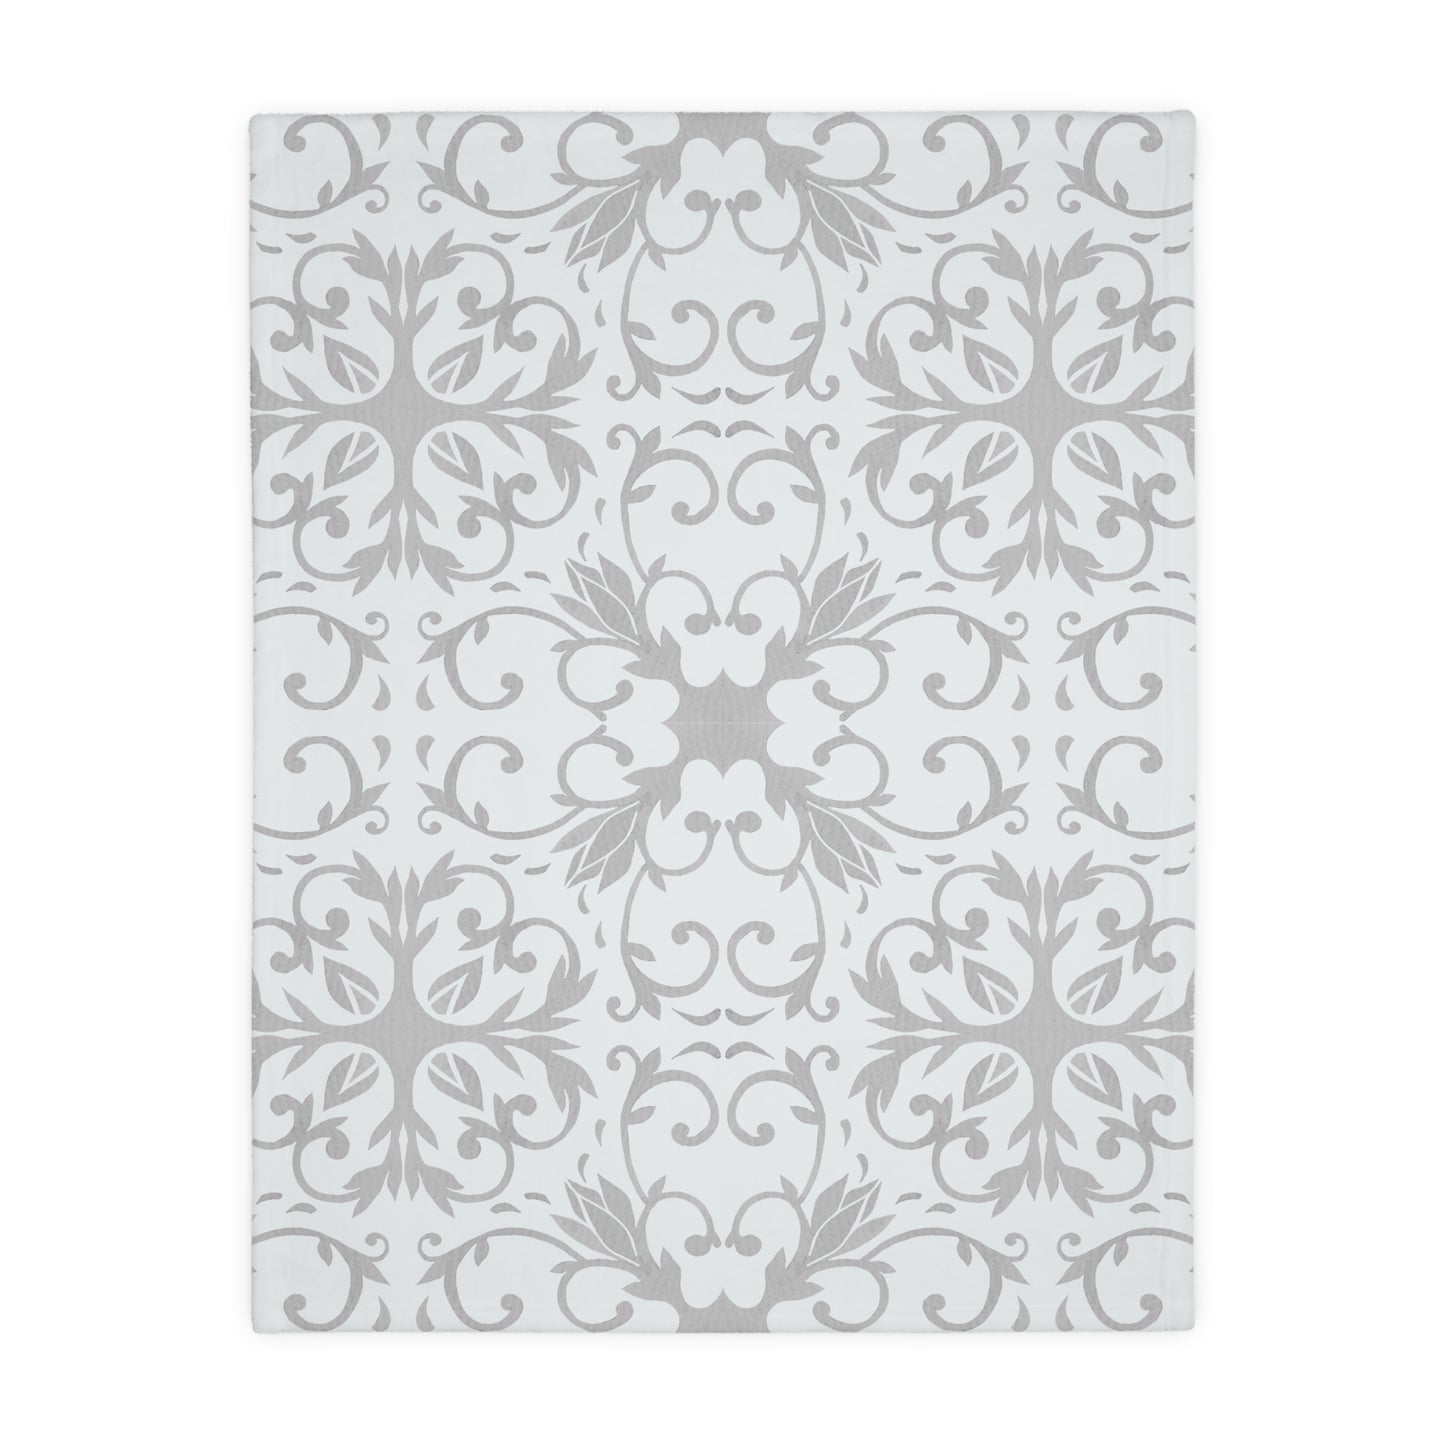 Grey Mist | Velveteen Microfiber Blanket (Two Sided)